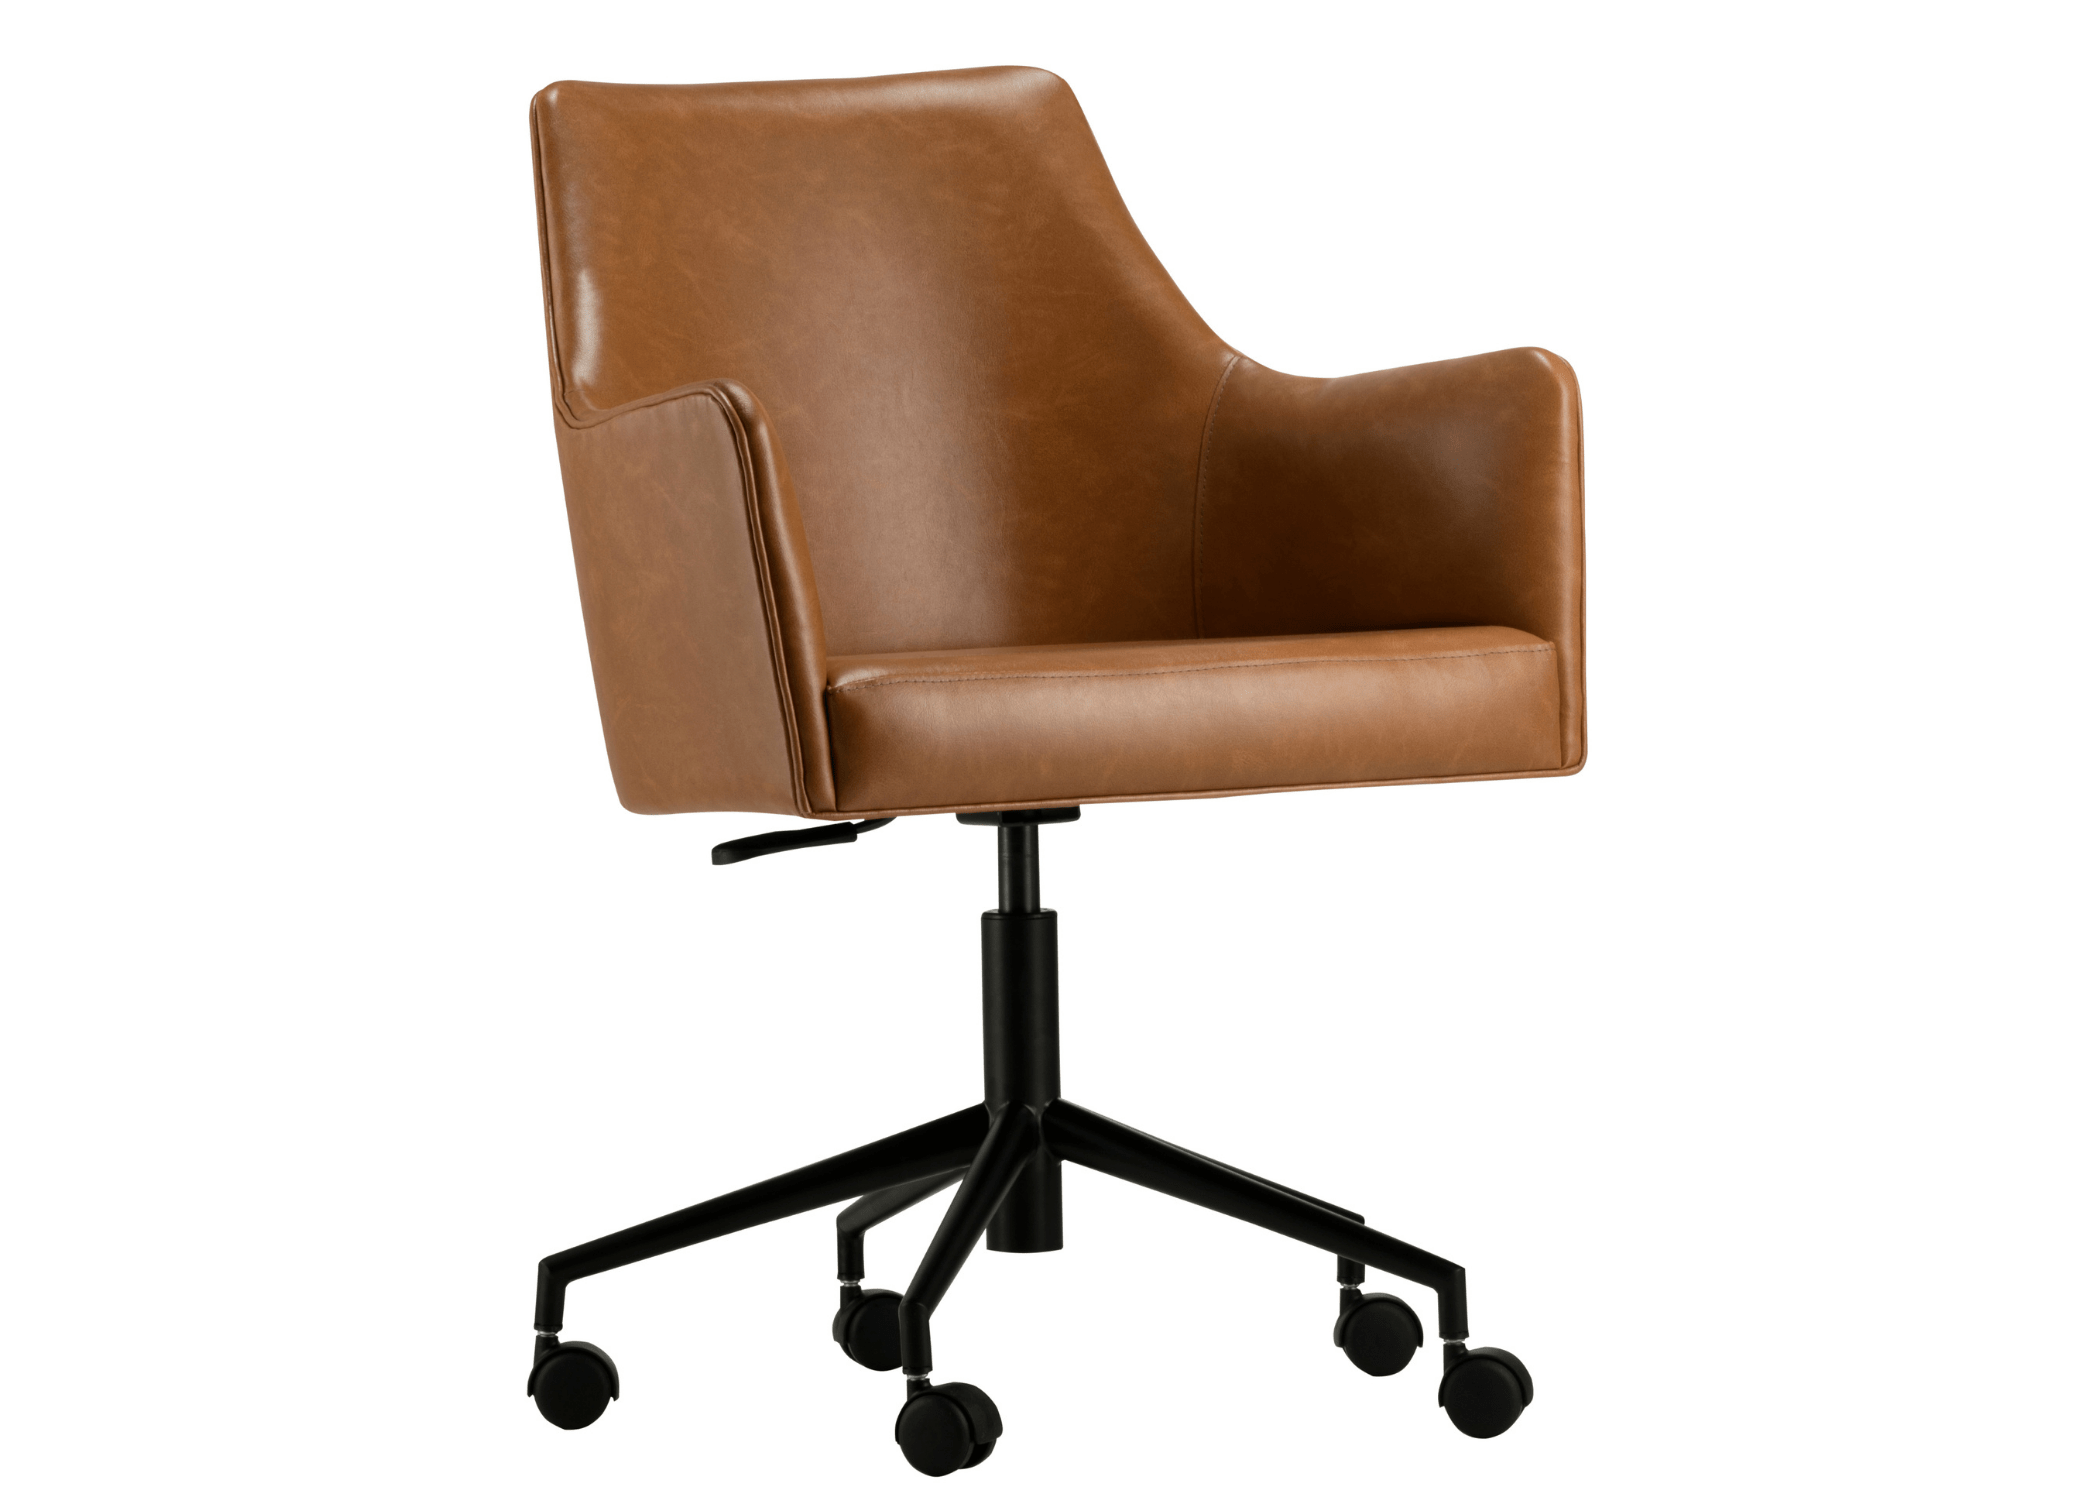 "Conforto ergonômico: Cadeira Sidney, onde o design moderno encontra suporte personalizado.